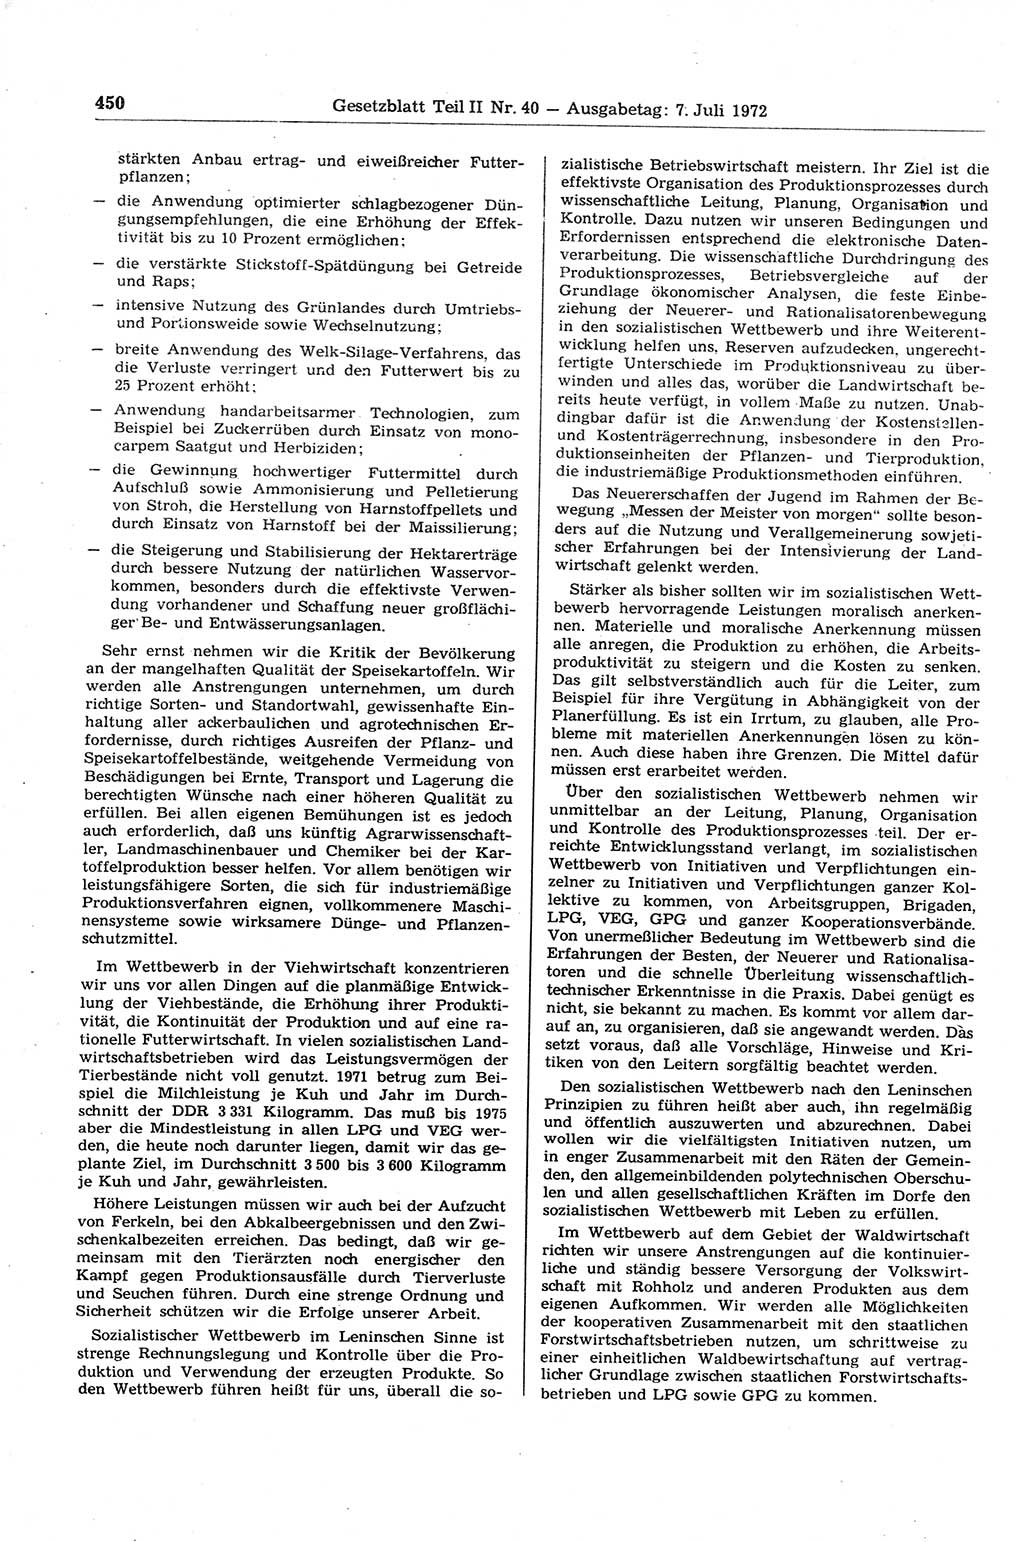 Gesetzblatt (GBl.) der Deutschen Demokratischen Republik (DDR) Teil ⅠⅠ 1972, Seite 450 (GBl. DDR ⅠⅠ 1972, S. 450)